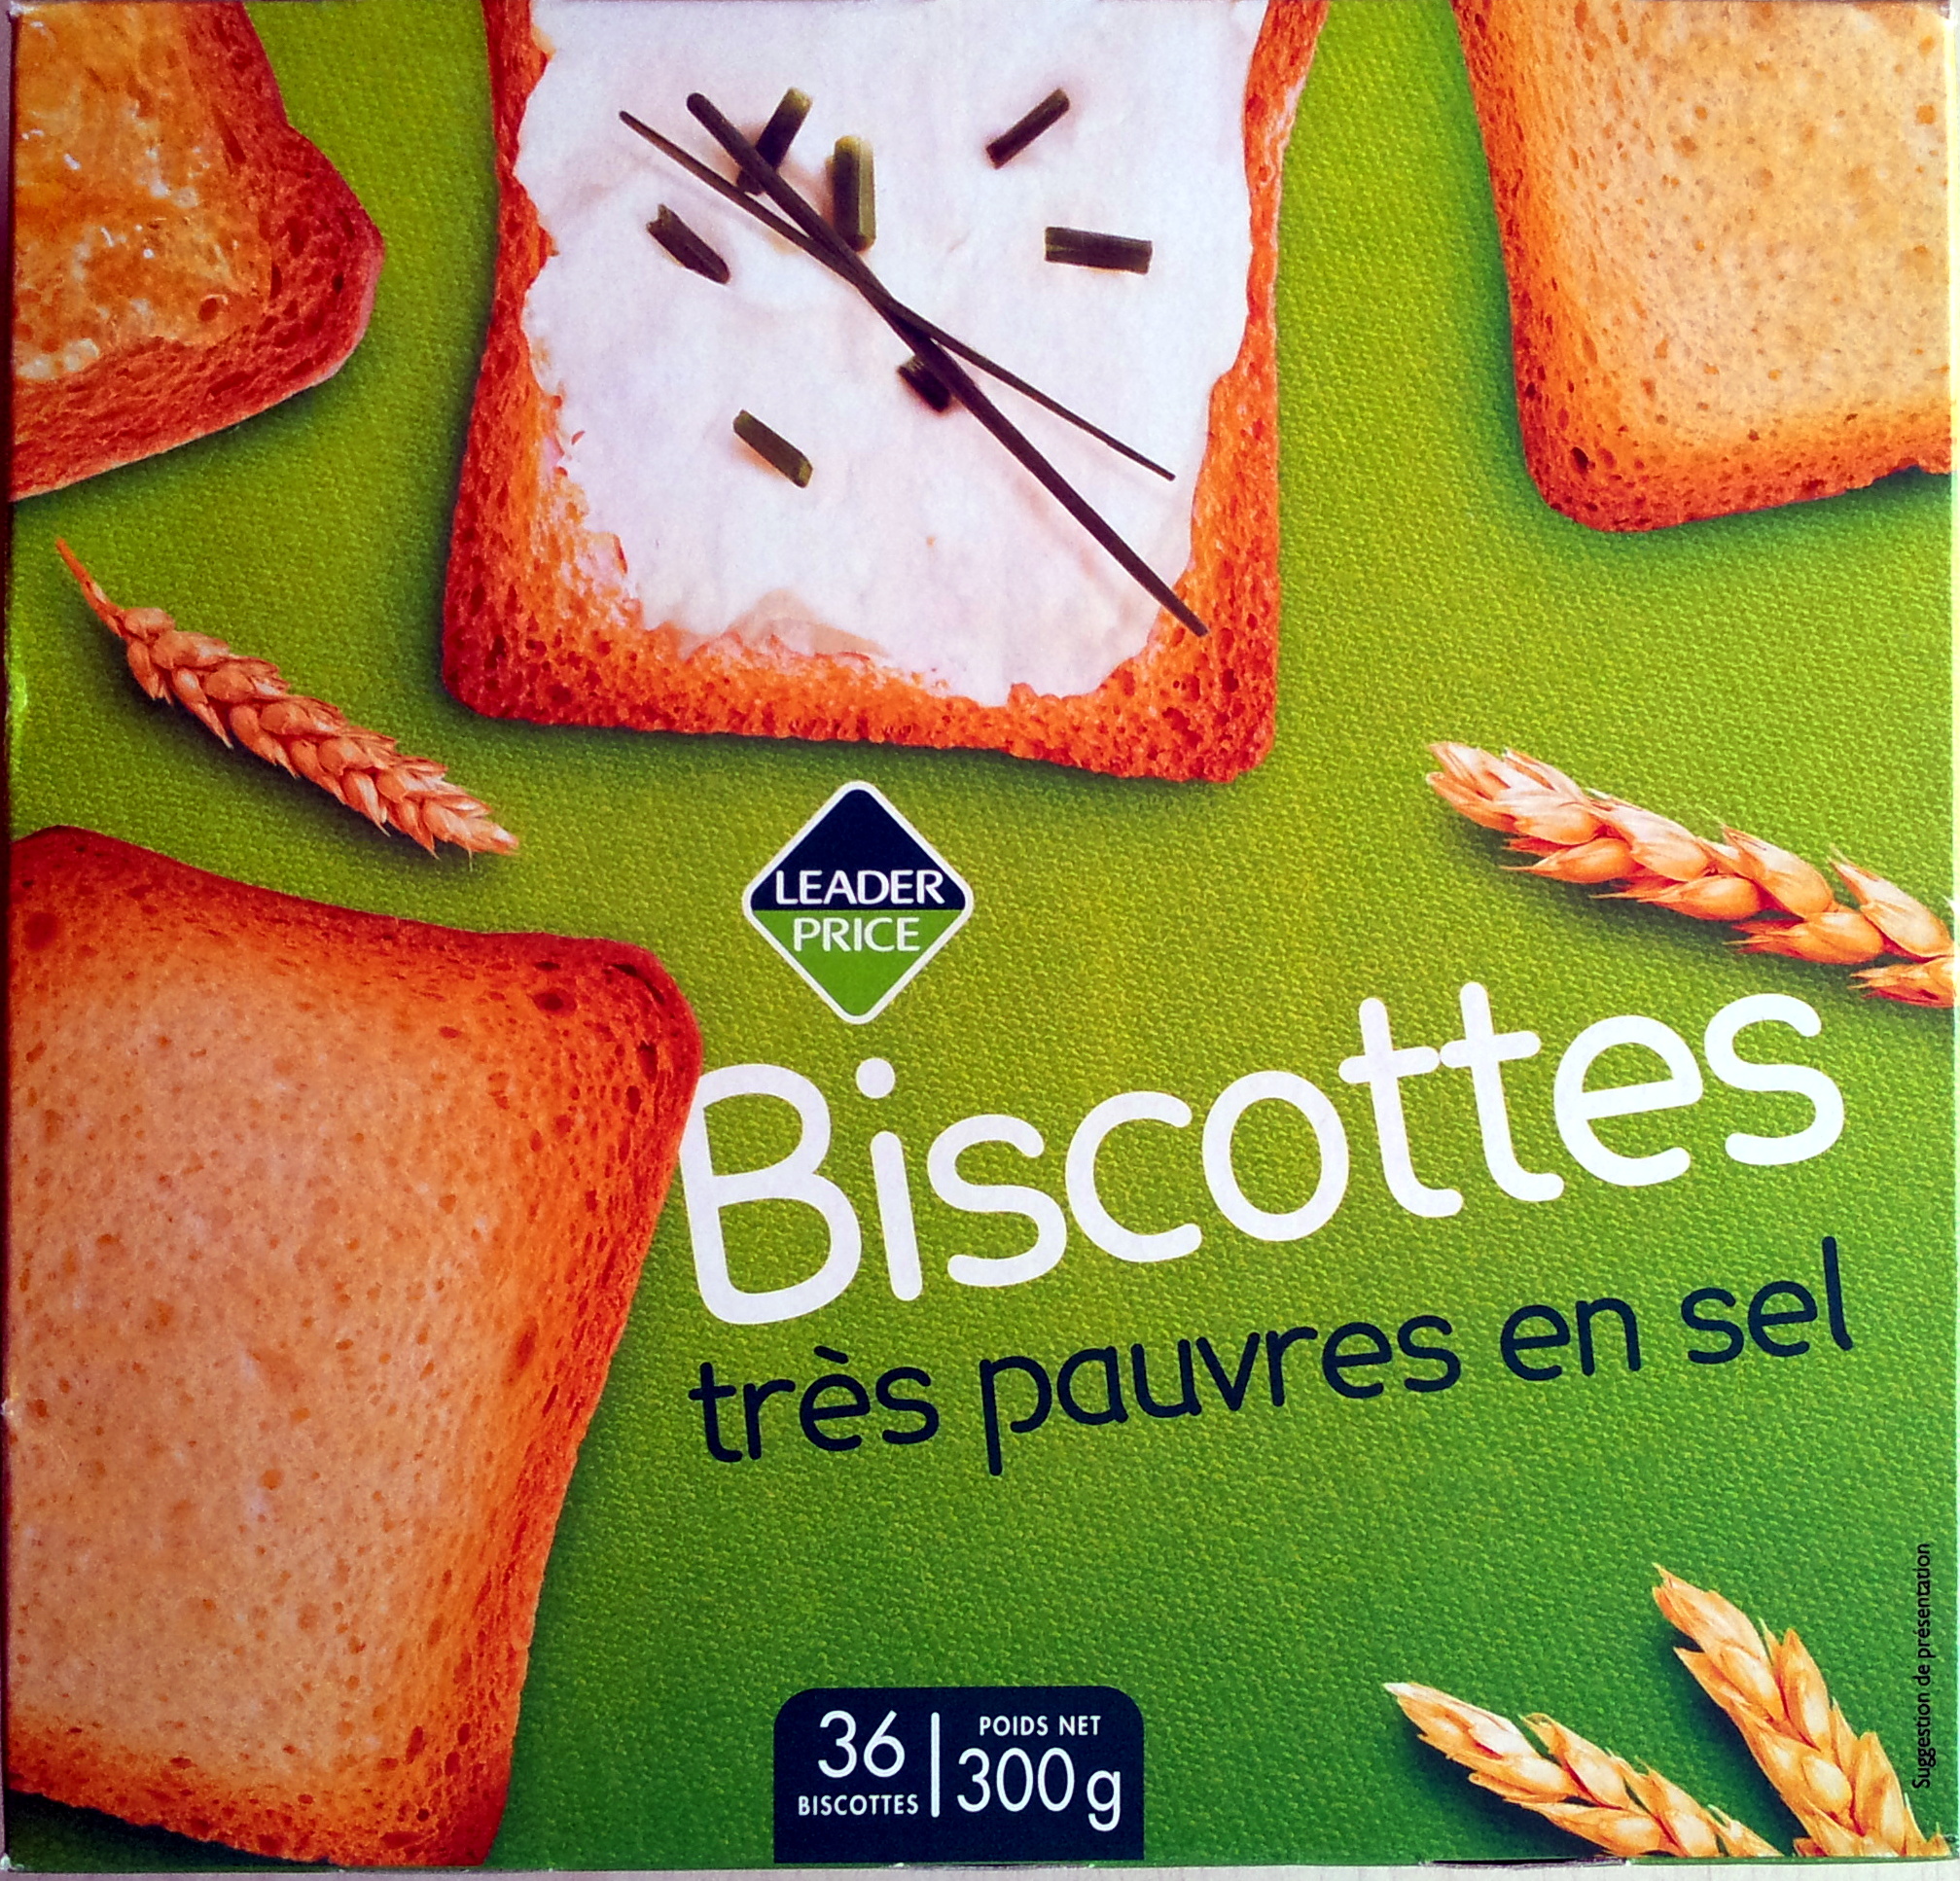 Biscottes très pauvres en sel (36 biscottes) - Product - fr